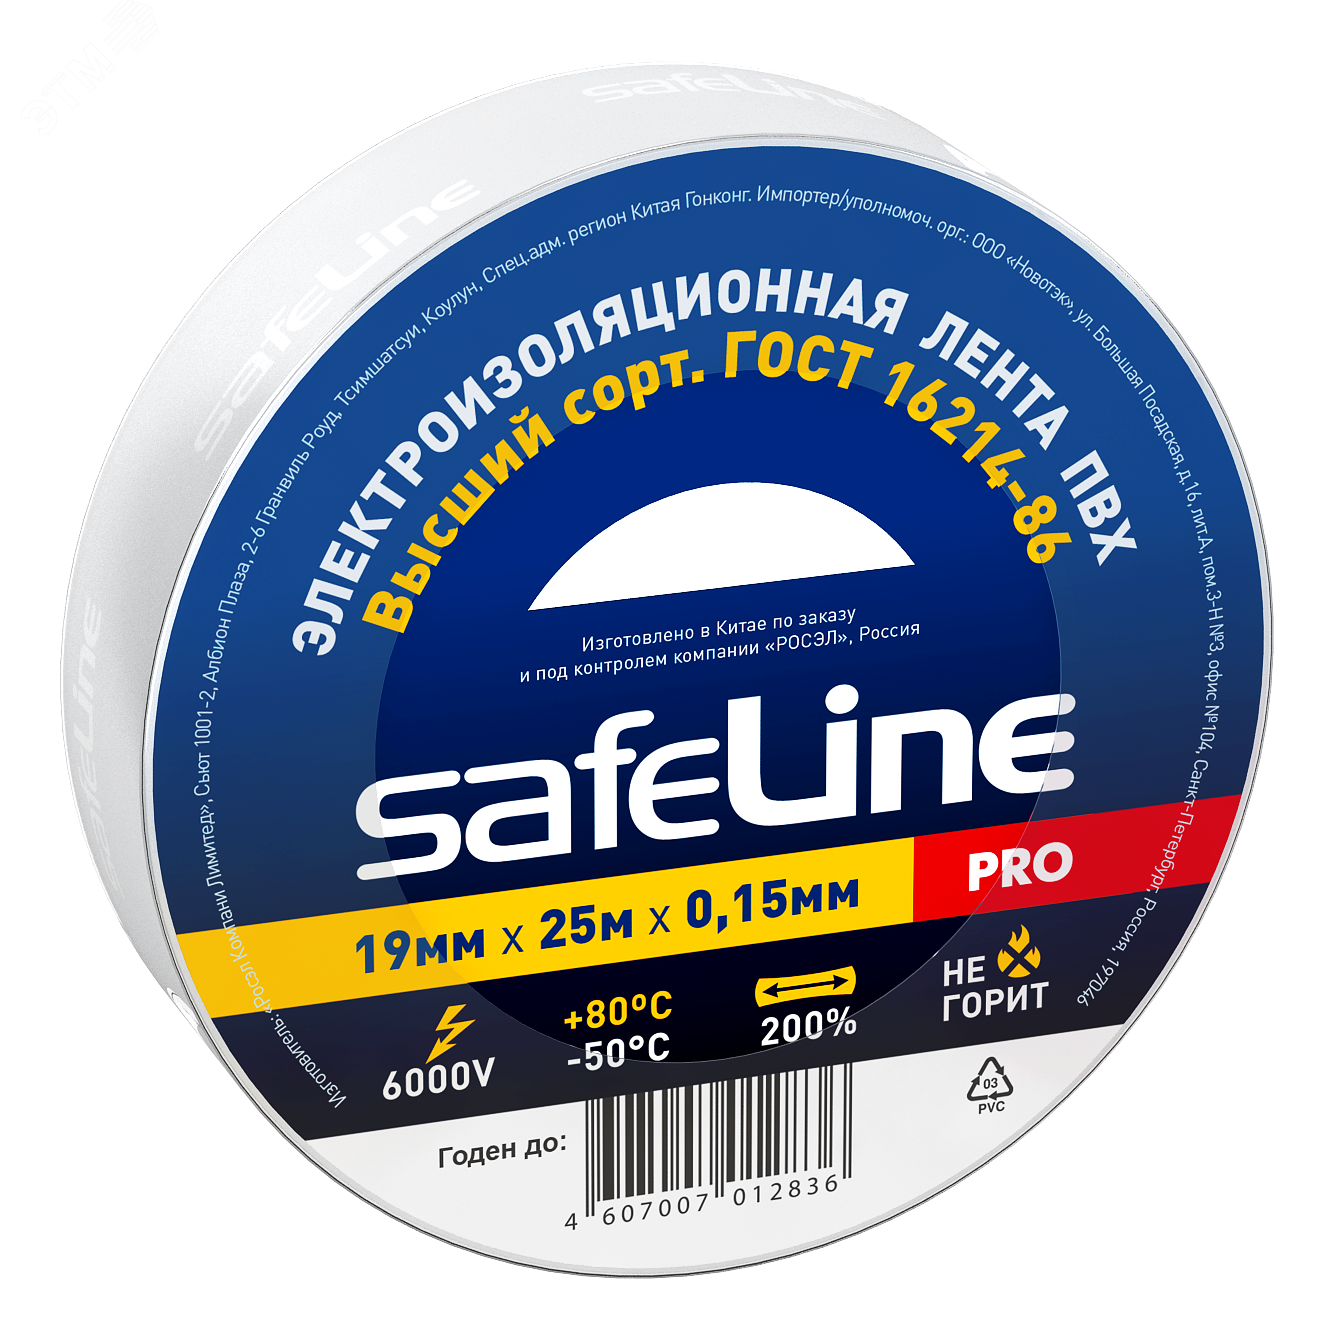 Изолента Safeline 19/25 белый 9373 SafeLine - превью 2